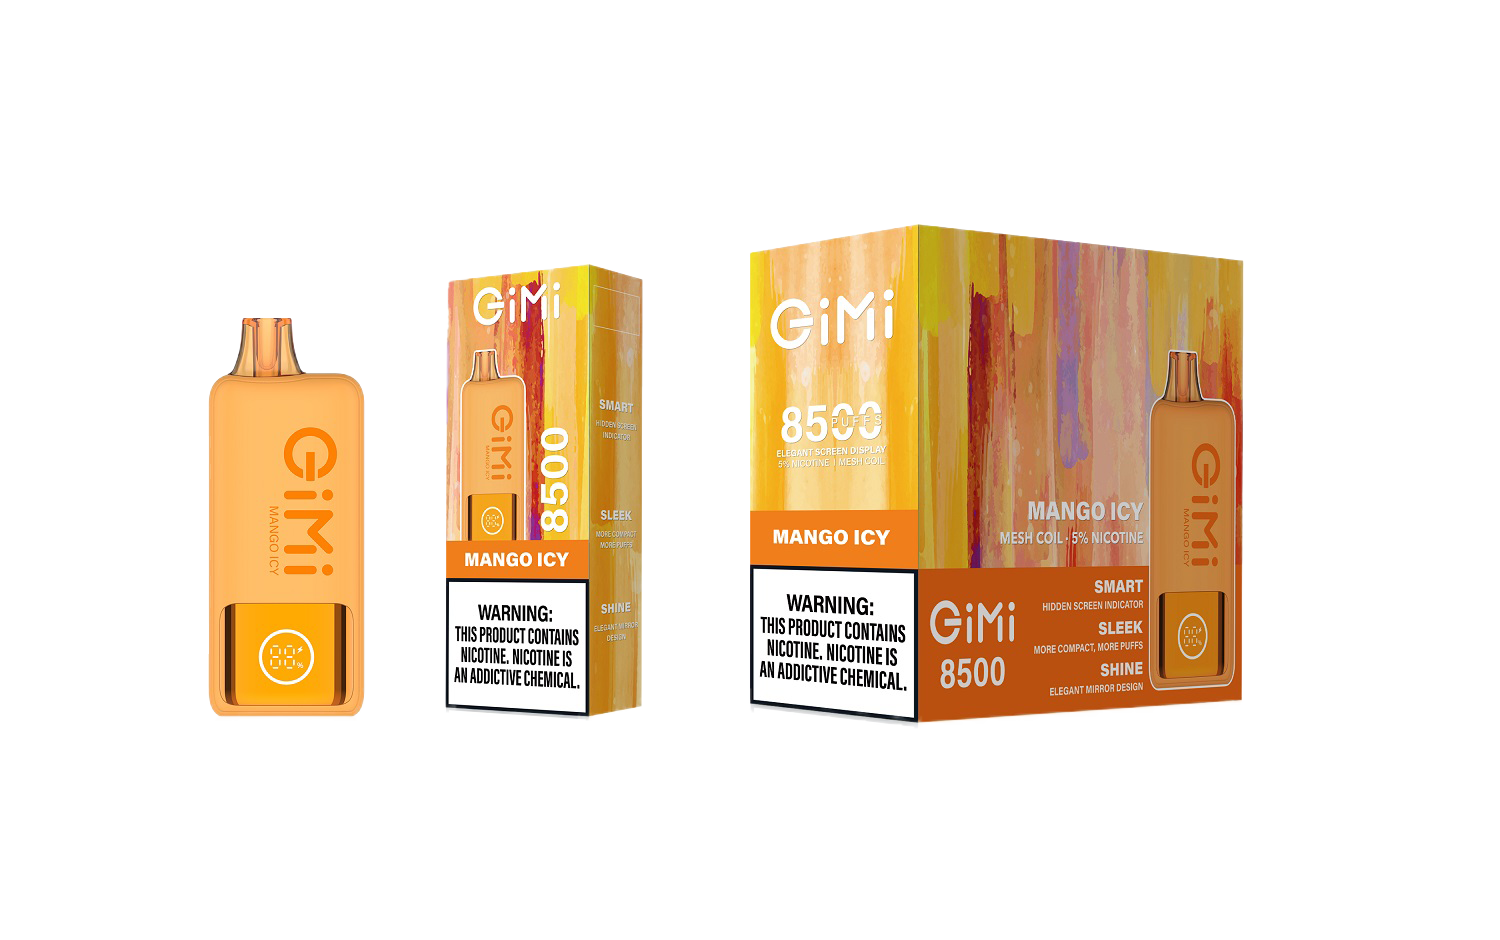 FLUM GIMI Smart Disposable Vape 8500 Puffs